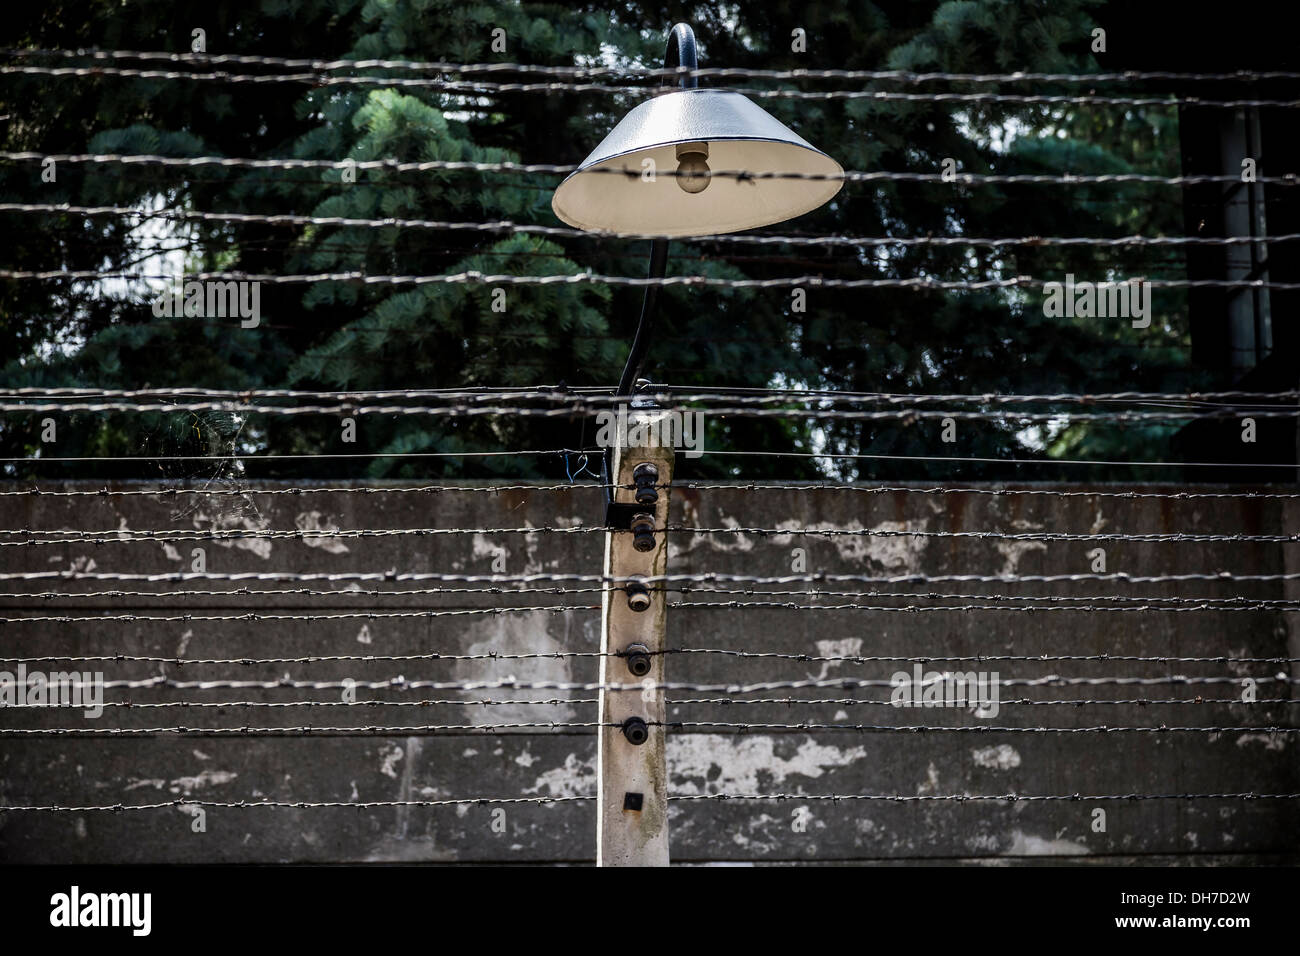 Konzentrationslager Auschwitz in Oswiecim, Polen. Stockfoto